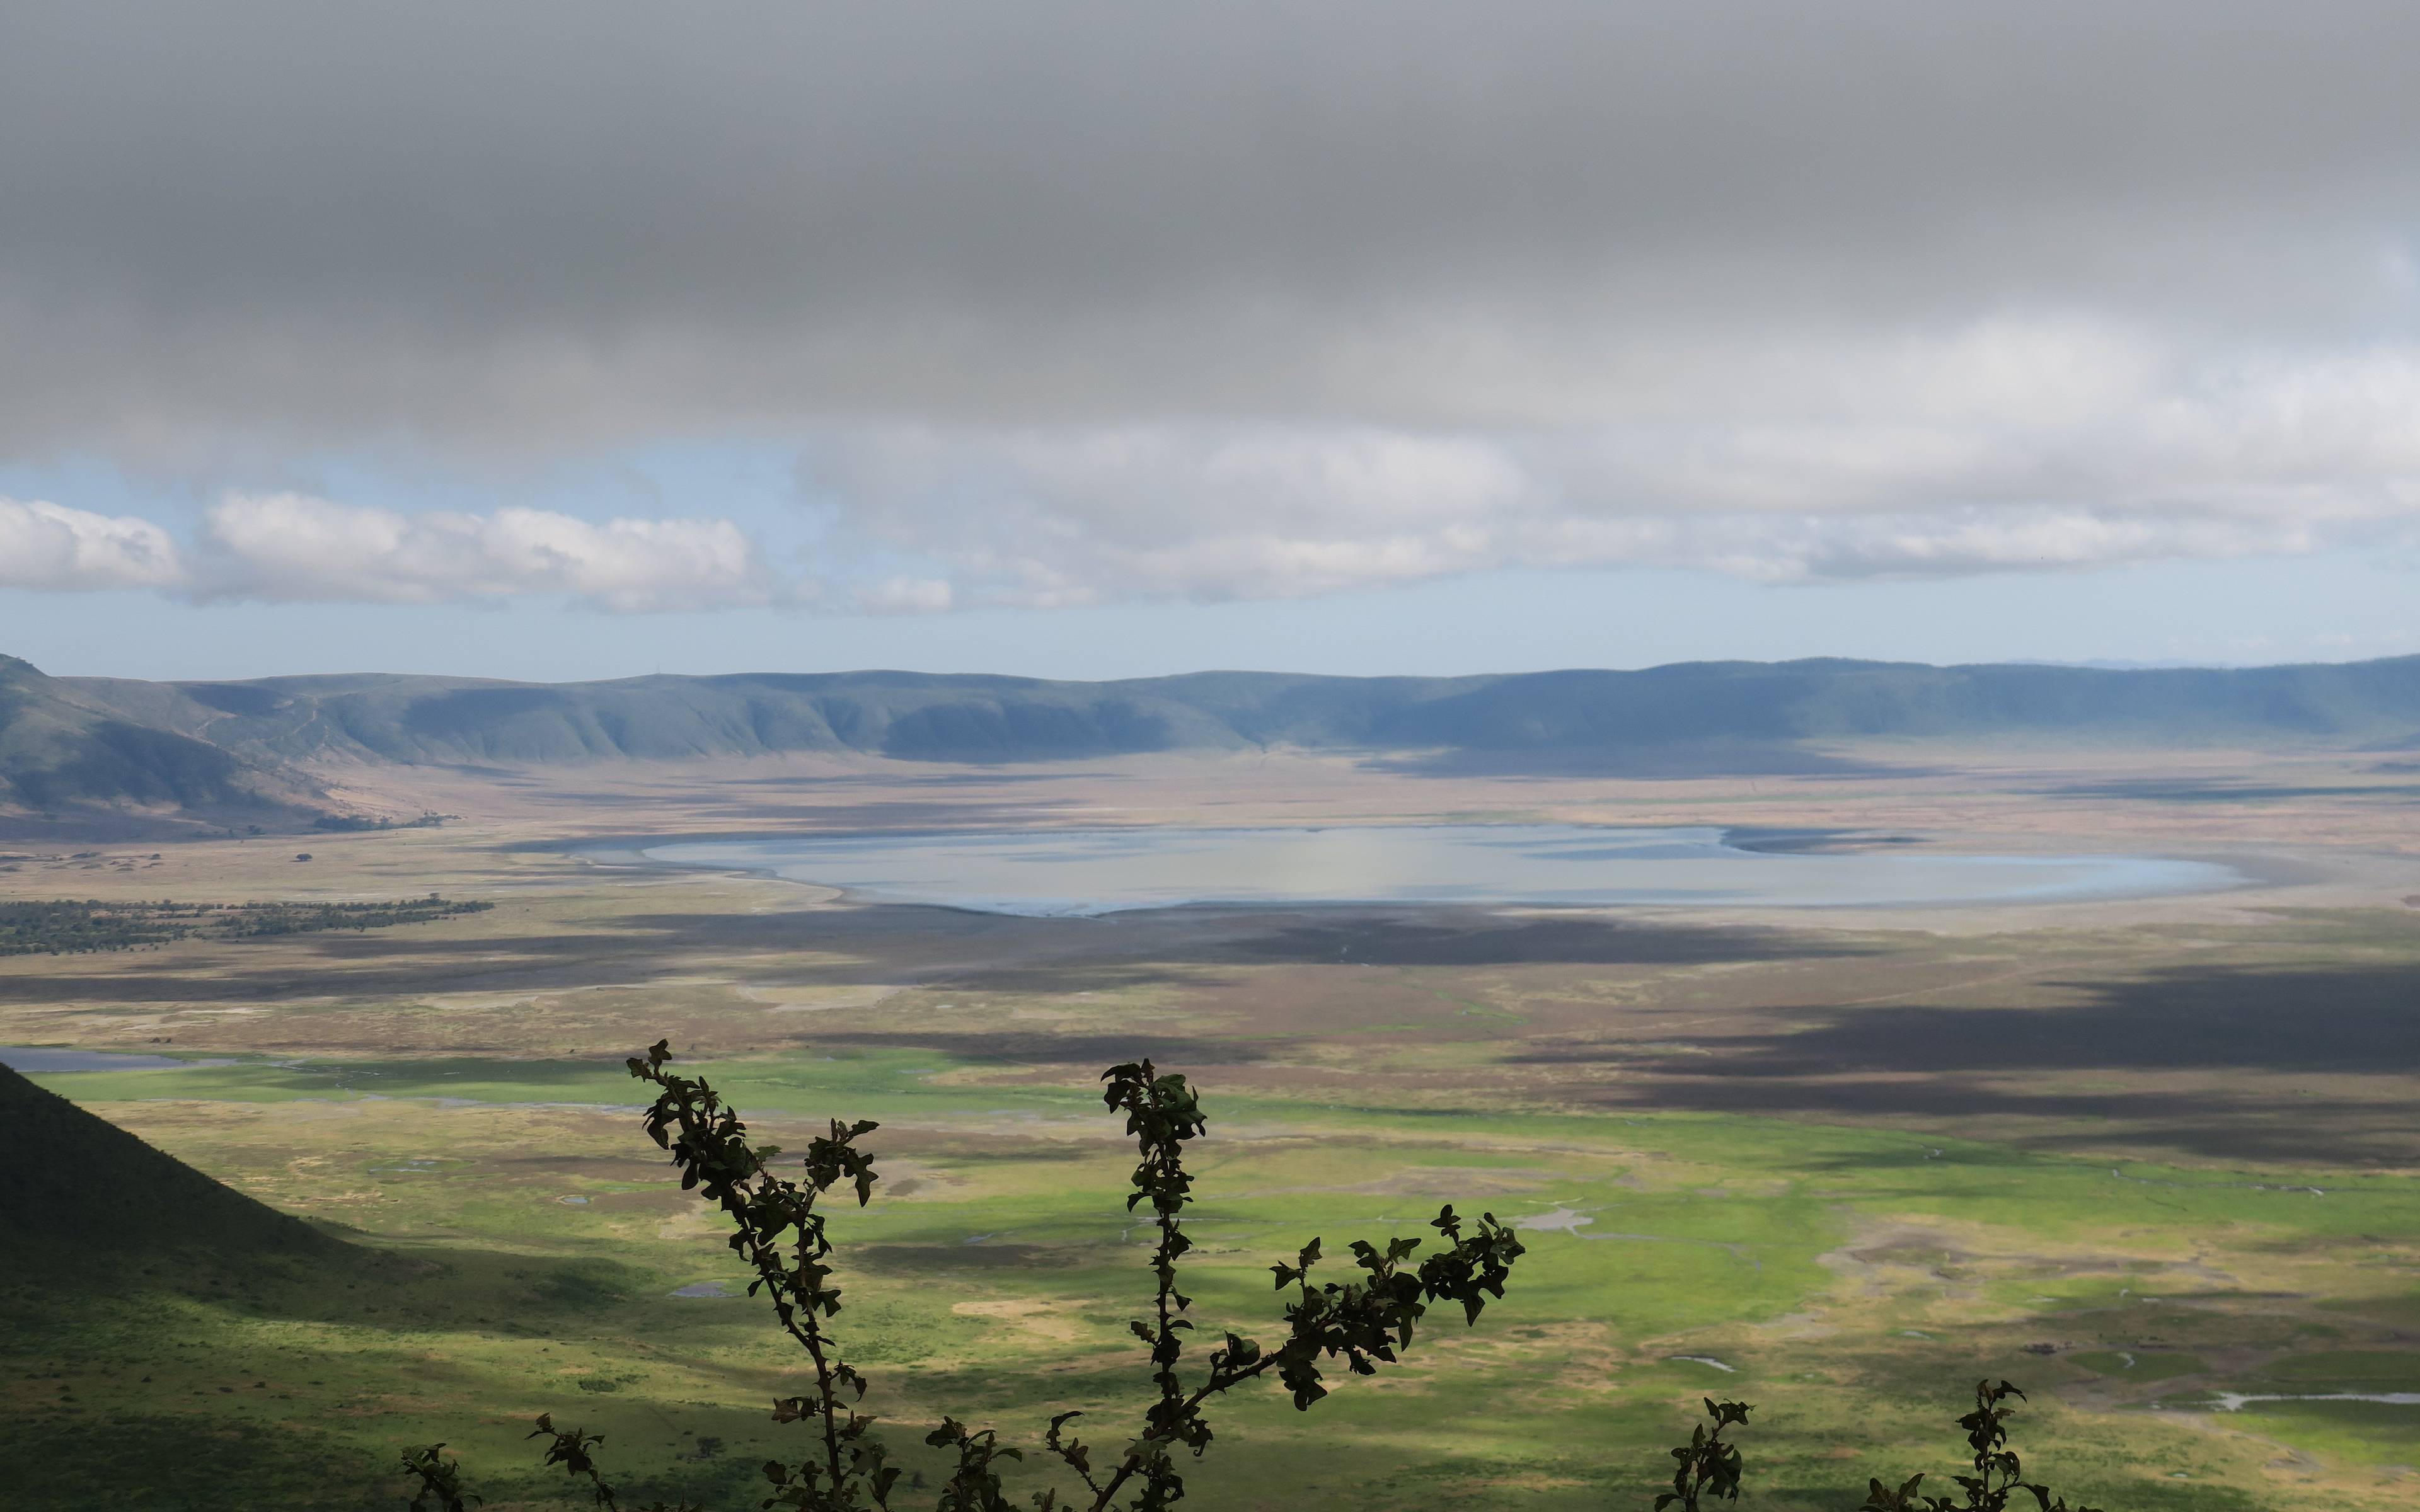 Daal af naar de kratervloer van de Ngorongoro